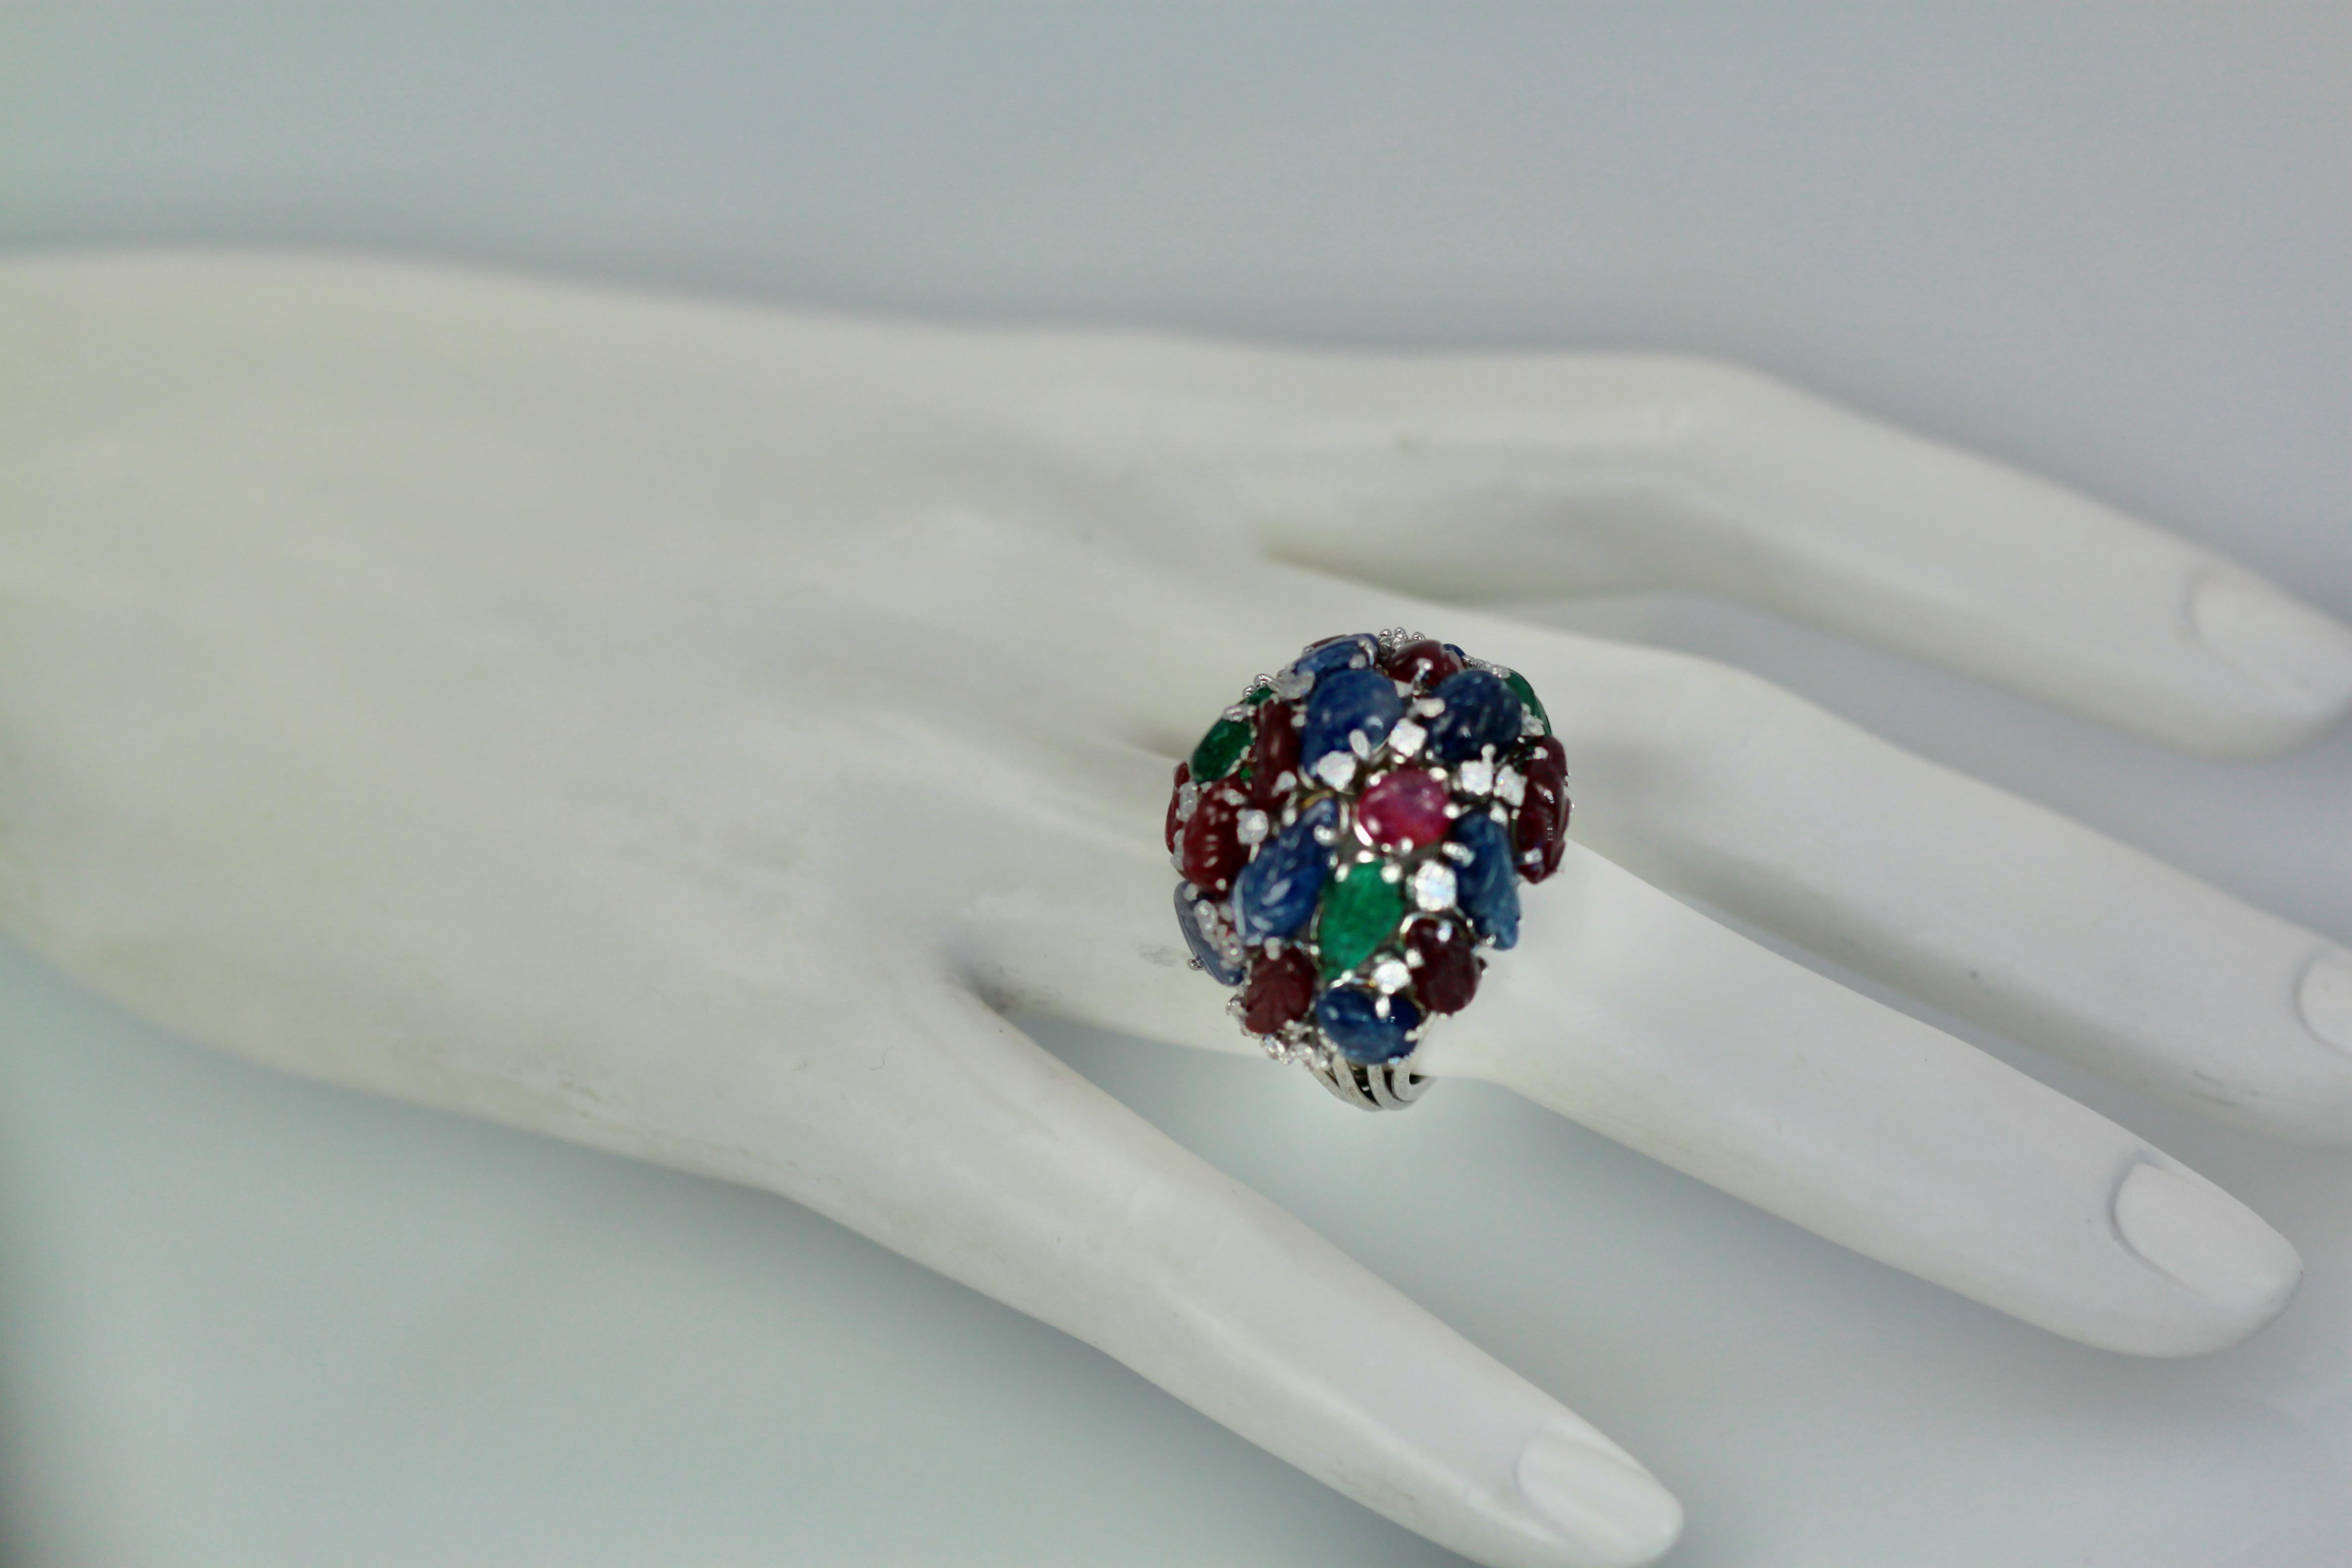 Taglio smeraldo Enorme anello Tutti Frutti 18K, smeraldi, rubini, zaffiri e diamanti in vendita